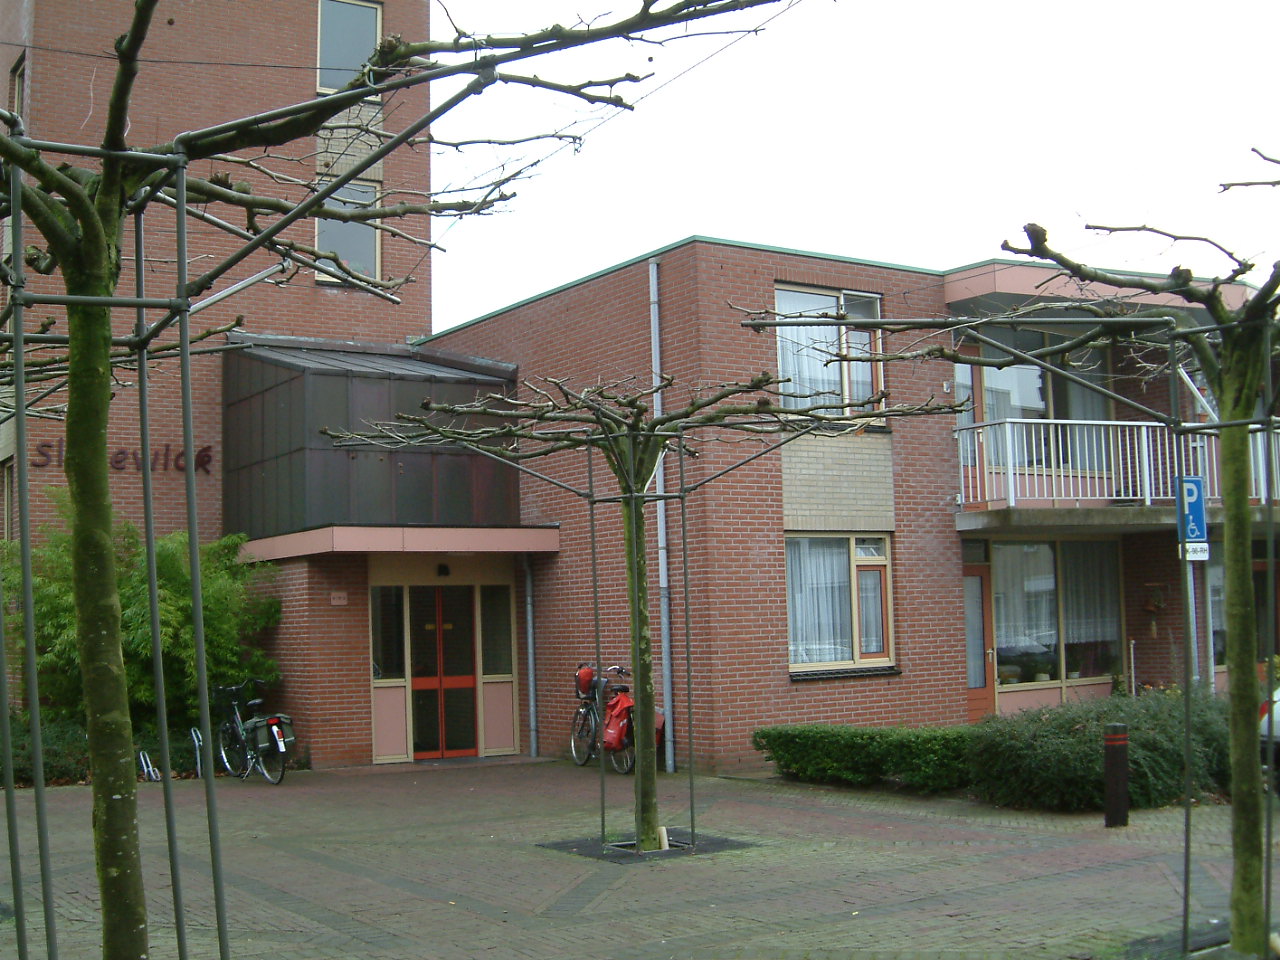 Sleeswijkstraat 38, 7101 GM Winterswijk, Nederland